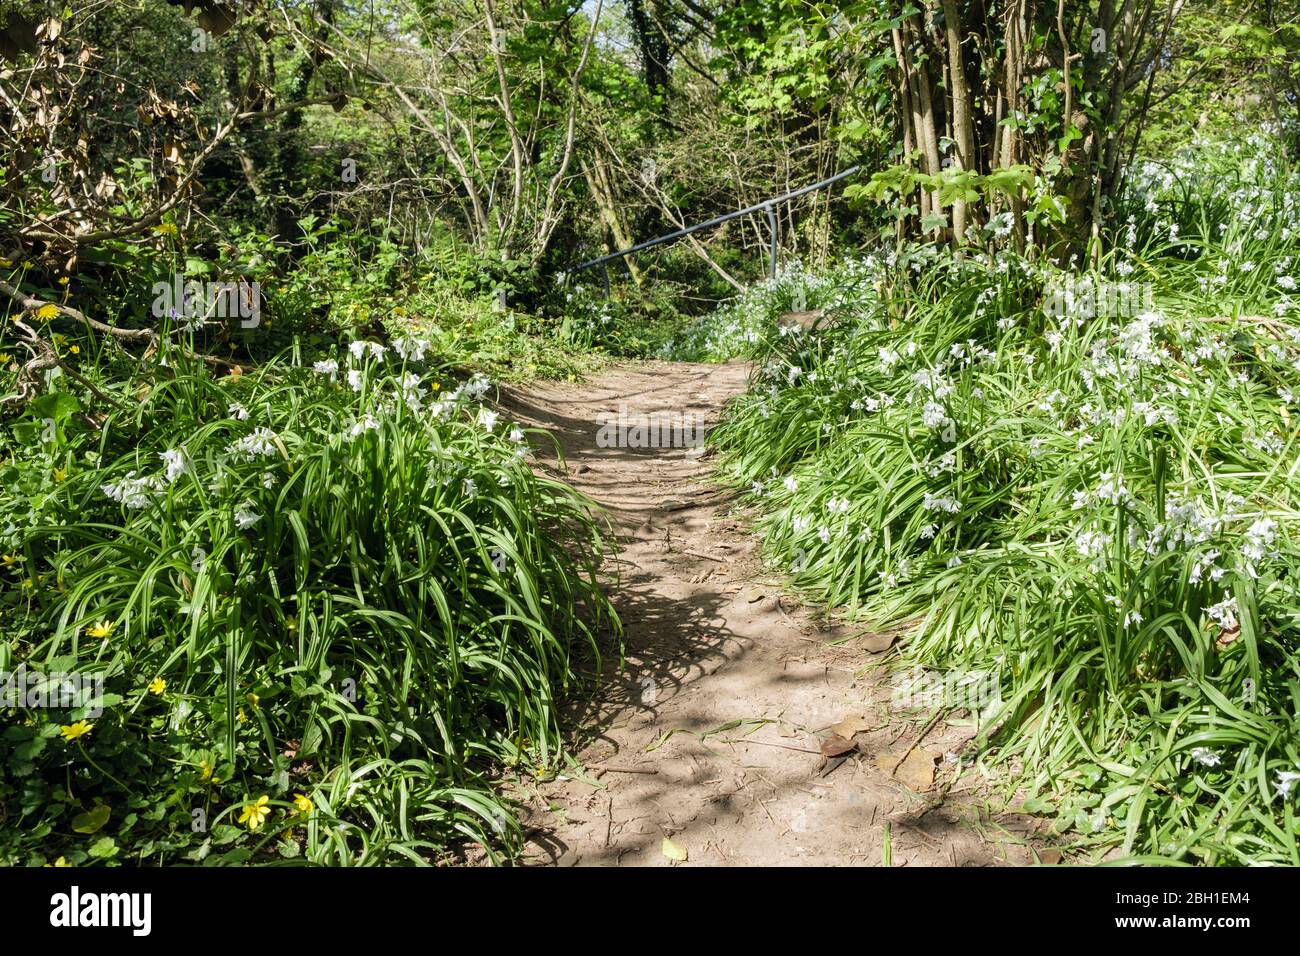 Fleurs blanches de Leek à trois corniches (Allium triquetrum) qui poussent sauvage à côté d'un sentier boisé au printemps. Bois de gypse Benllech Isle of Anglesey Pays de Galles Royaume-Uni Banque D'Images